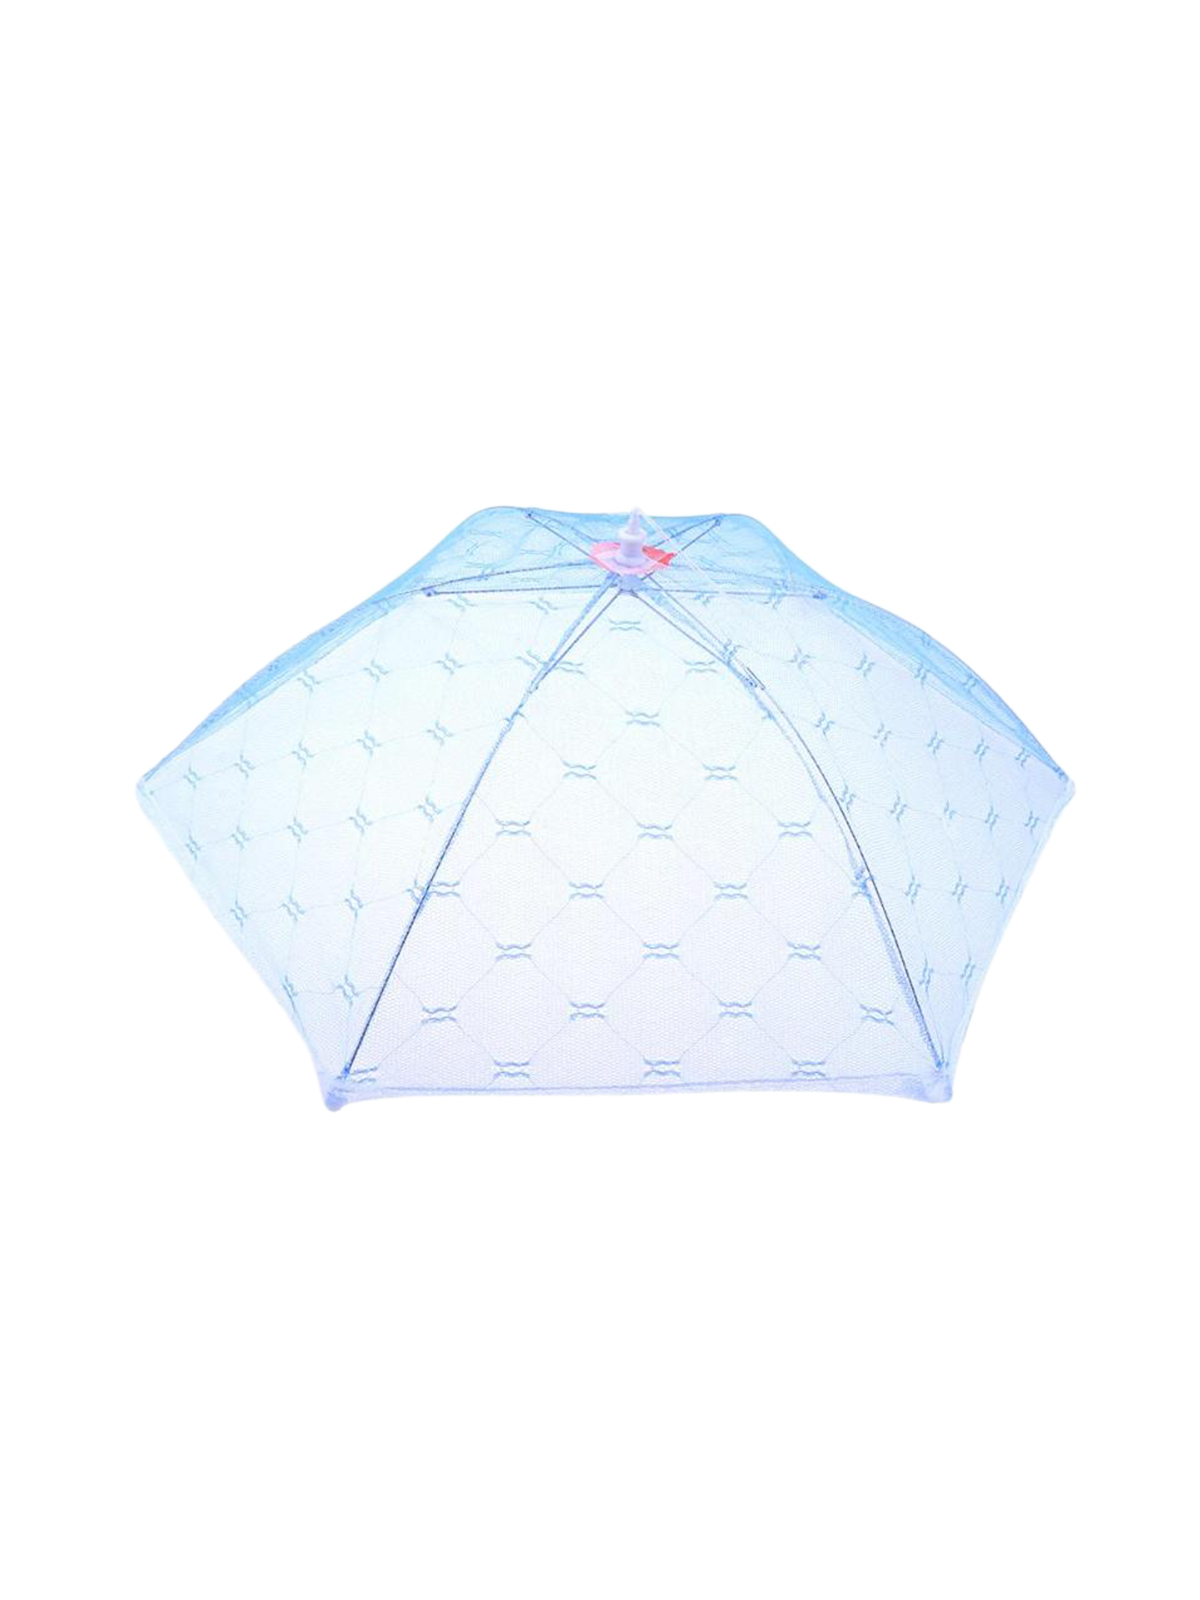 Чехол-зонтик для пищи, d= 40 см, 4 цвета Арт.DX-676